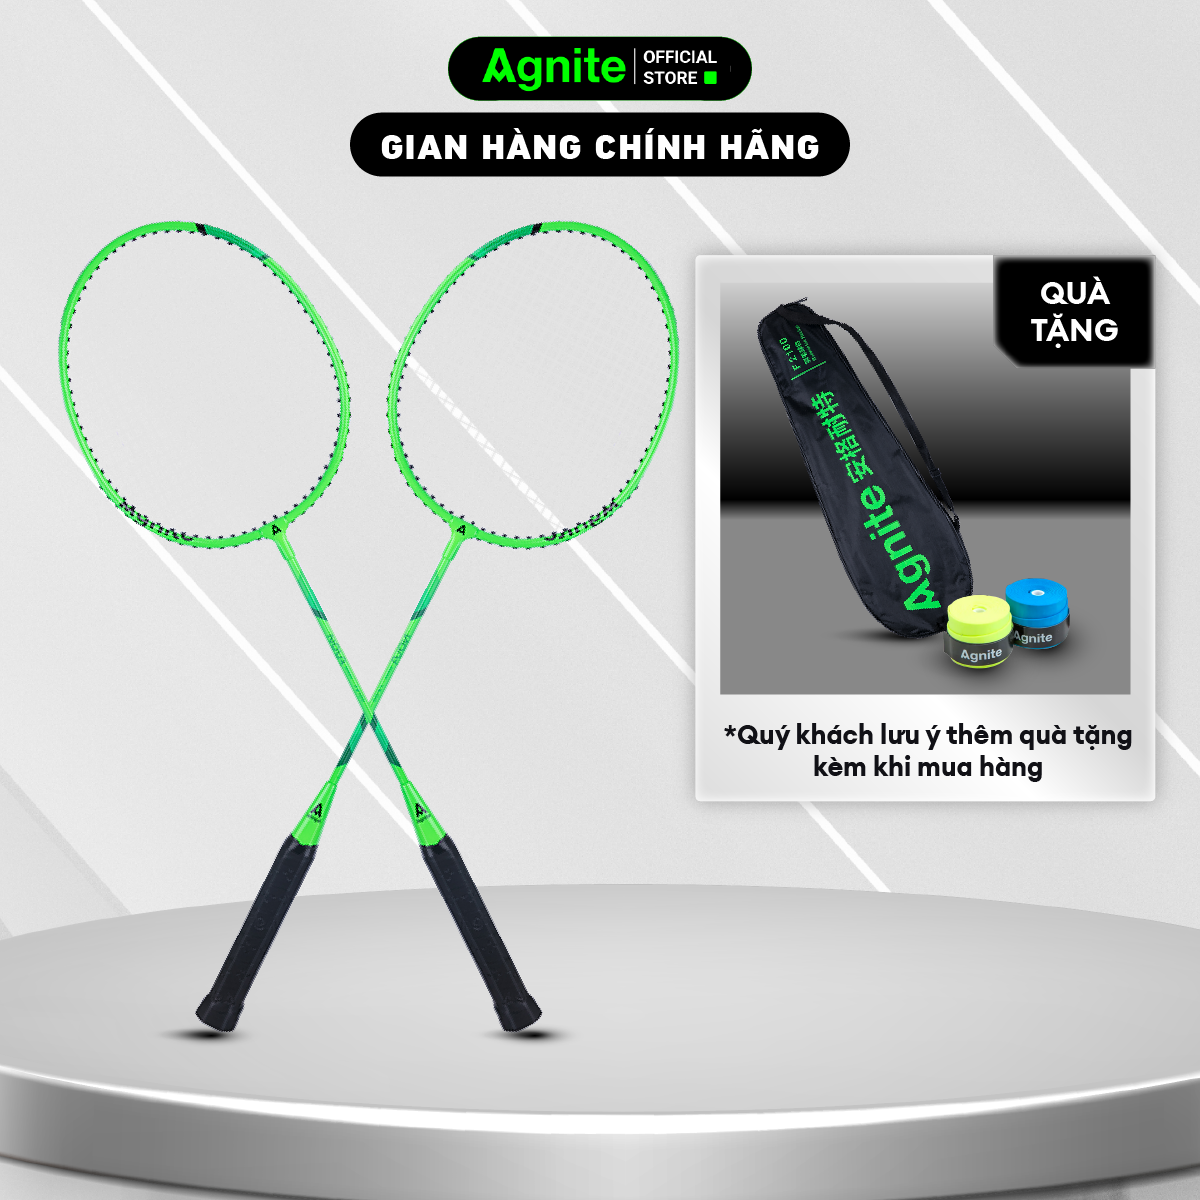 [RẺ NHẤT MALL] Bộ 2 vợt cầu lông giá rẻ chính hãng Agnite, bền, nhẹ, tặng kèm túi vợt và quả cầu lông - ER301/ER302